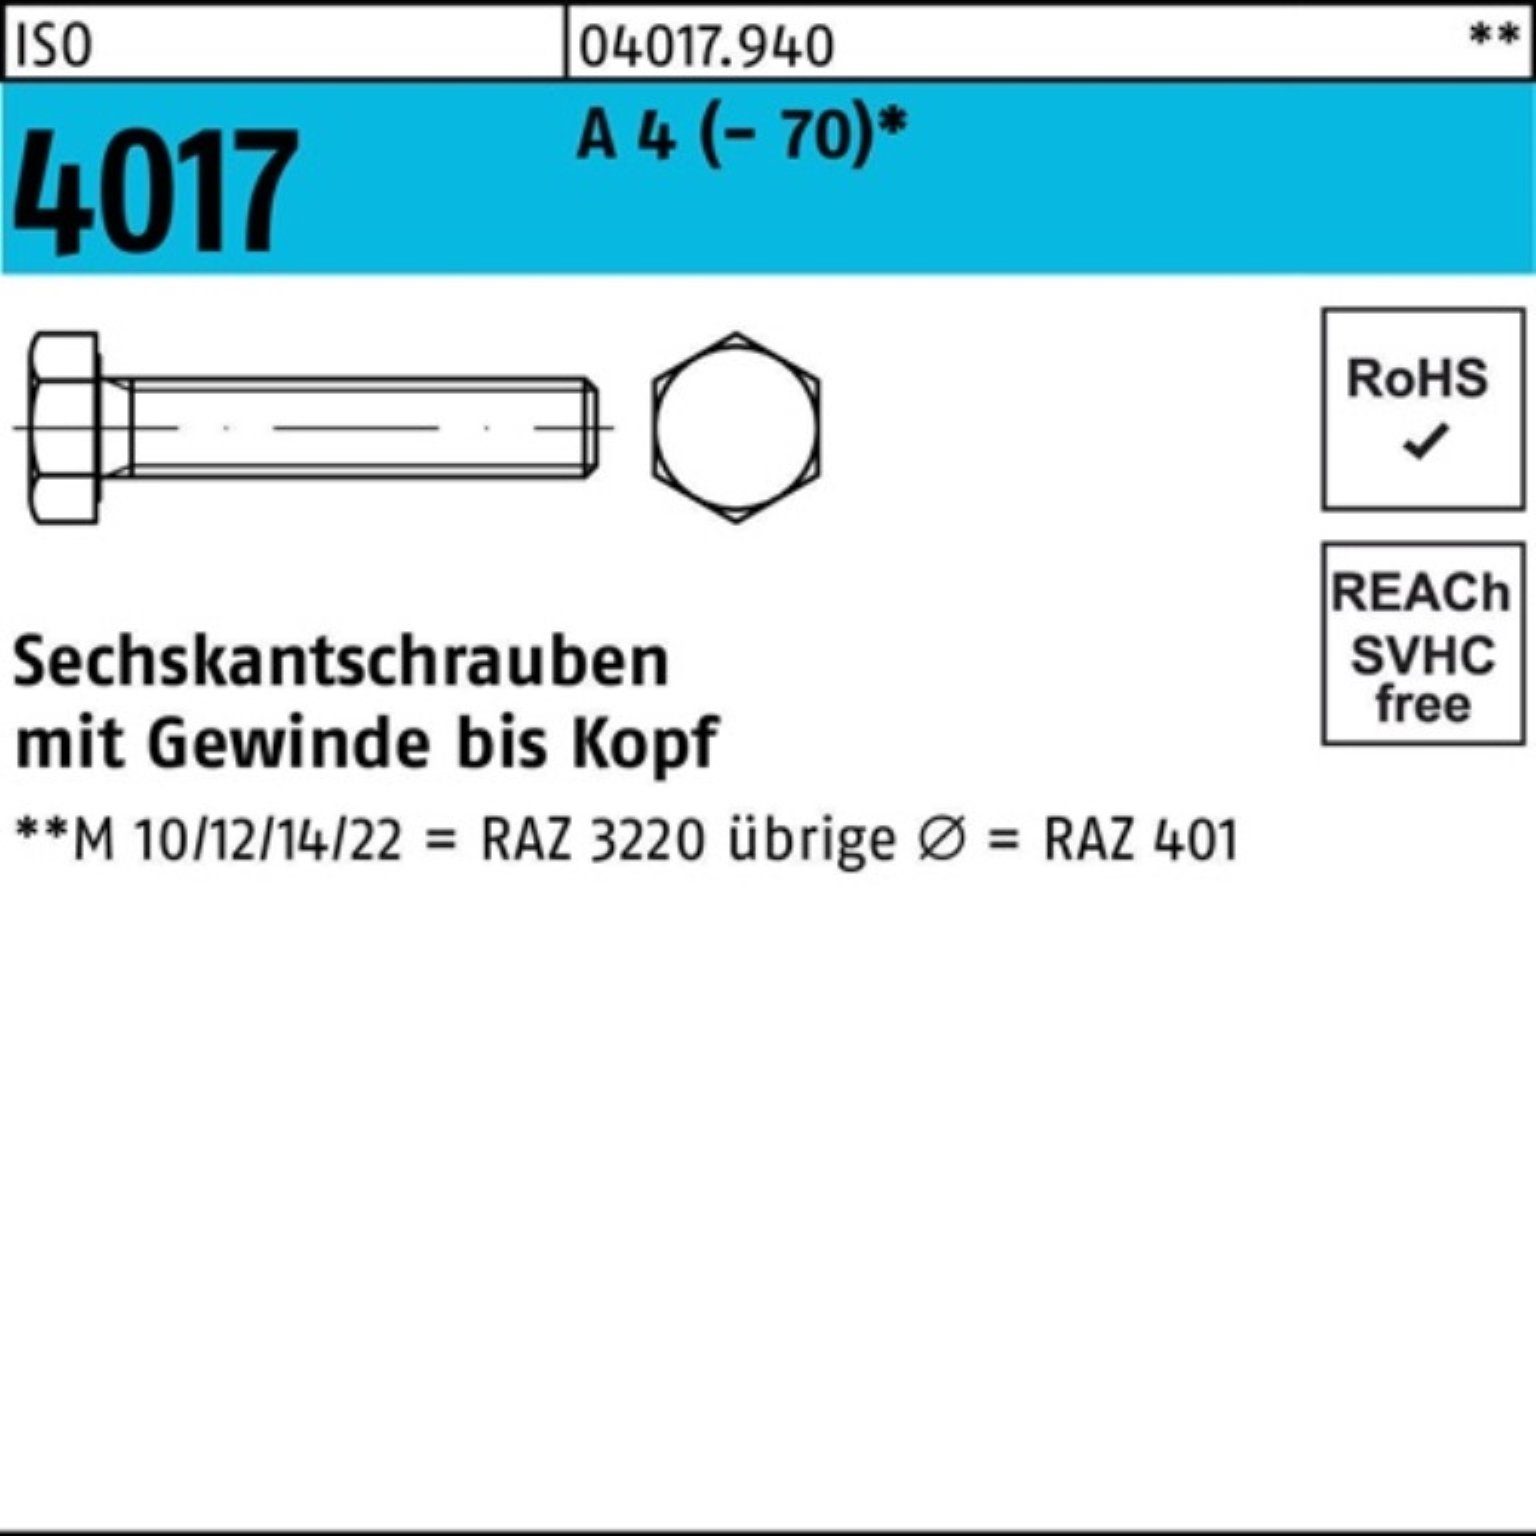 M12x Sechskantschraube Sechskantschraube 100 A (70) Bufab VG 35 Pack 4017 100er Stück ISO 4